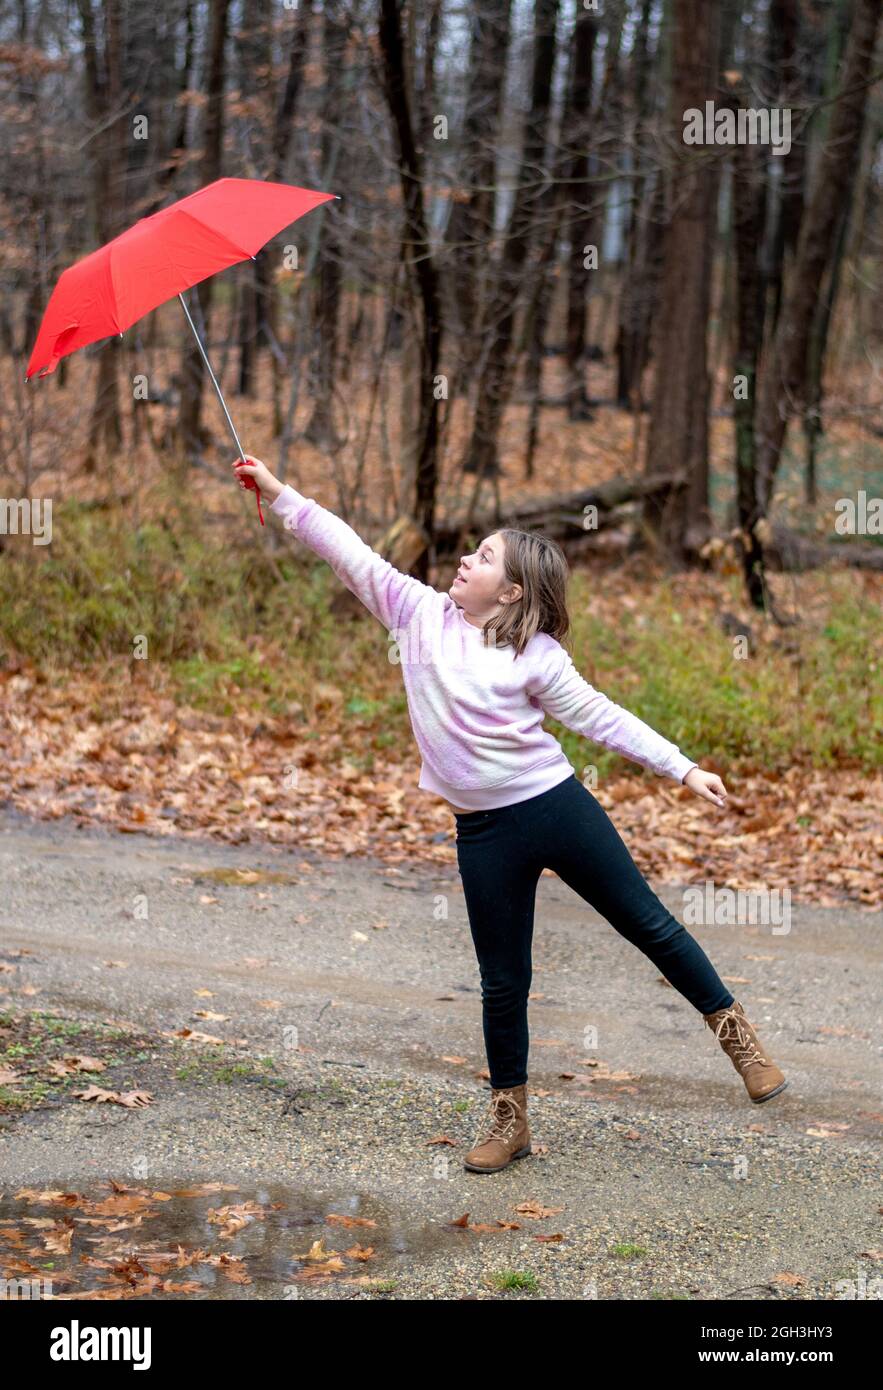 La joven lucha por aferrarse a un paraguas rojo en un día ventoso Foto de stock